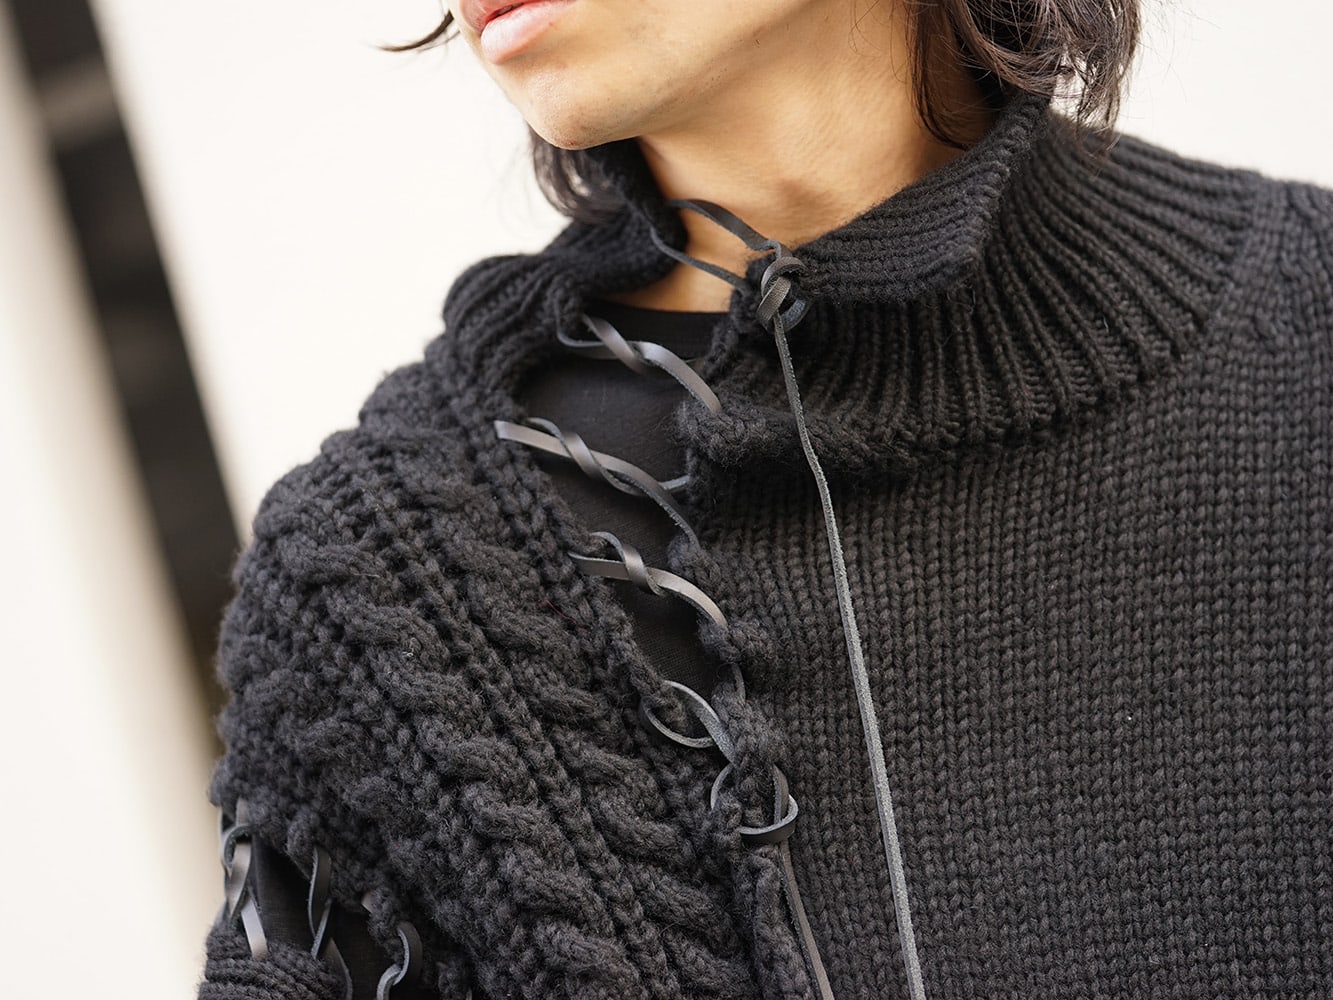 Yohji Yamamoto 18AW Knit Top and Skirt Style - FASCINATE BLOG